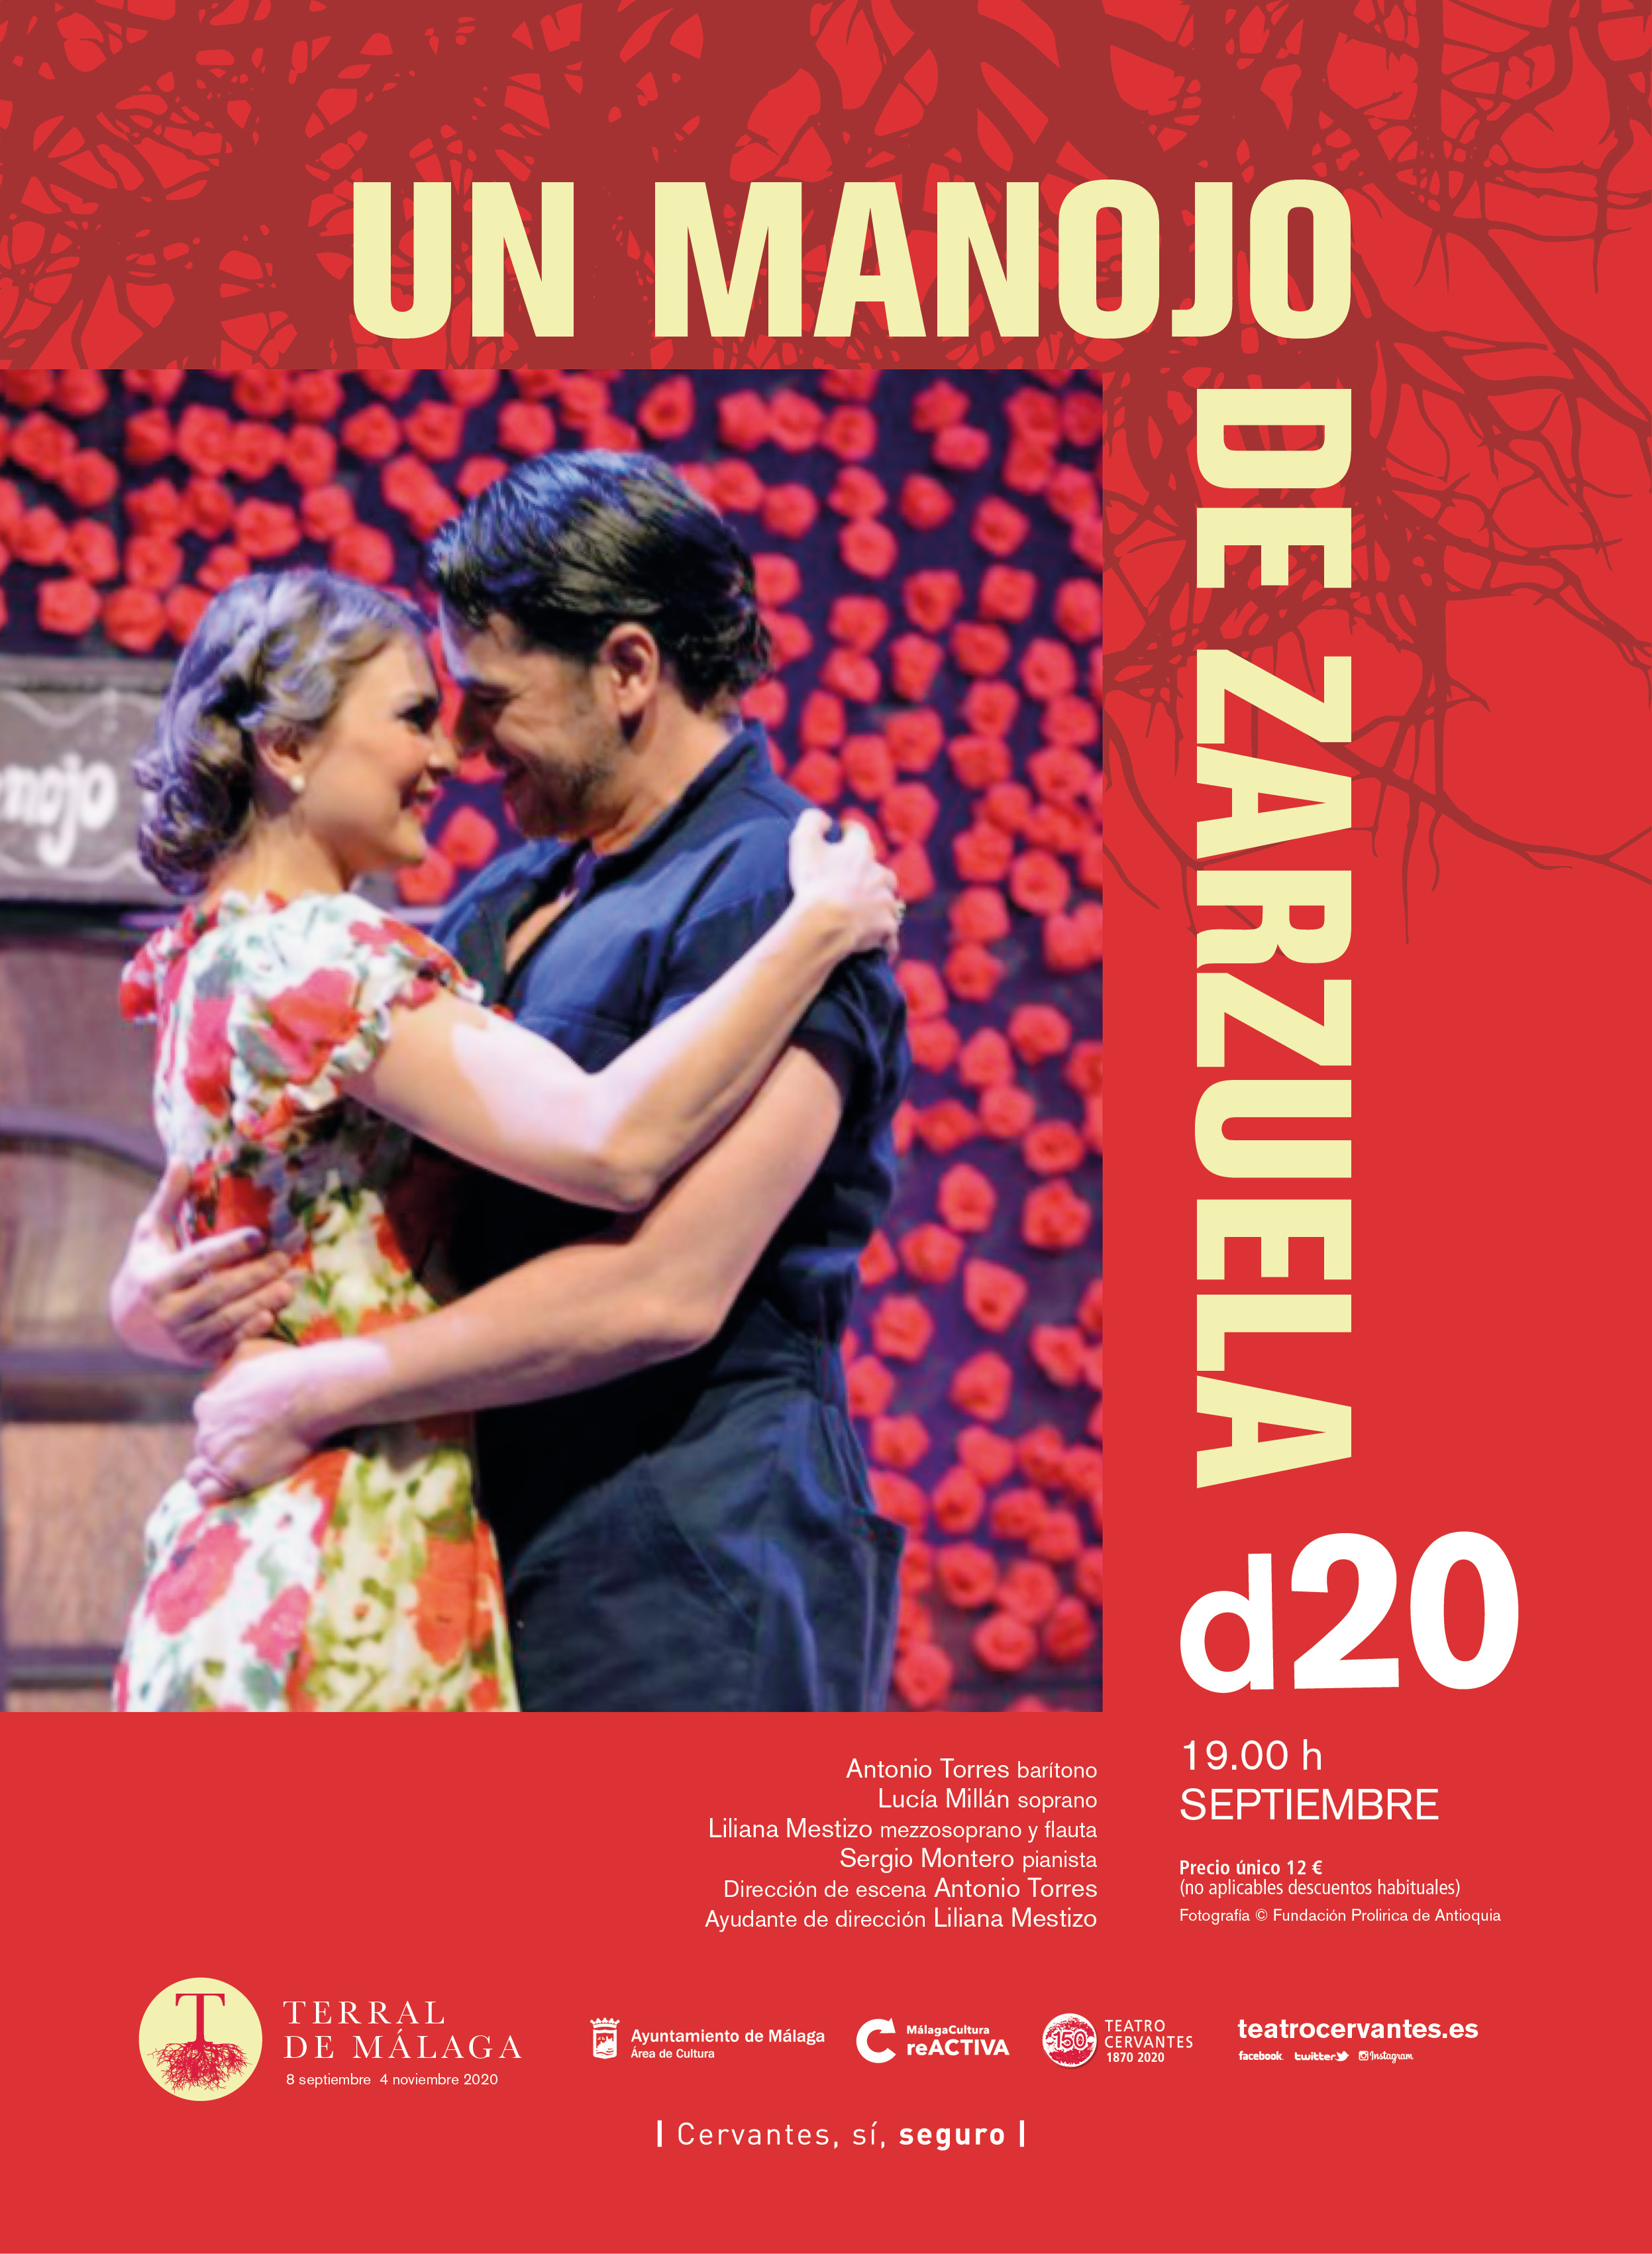 Cartel de "Un manojo de zarzuela" para el Teatro Cervantes de Málaga.